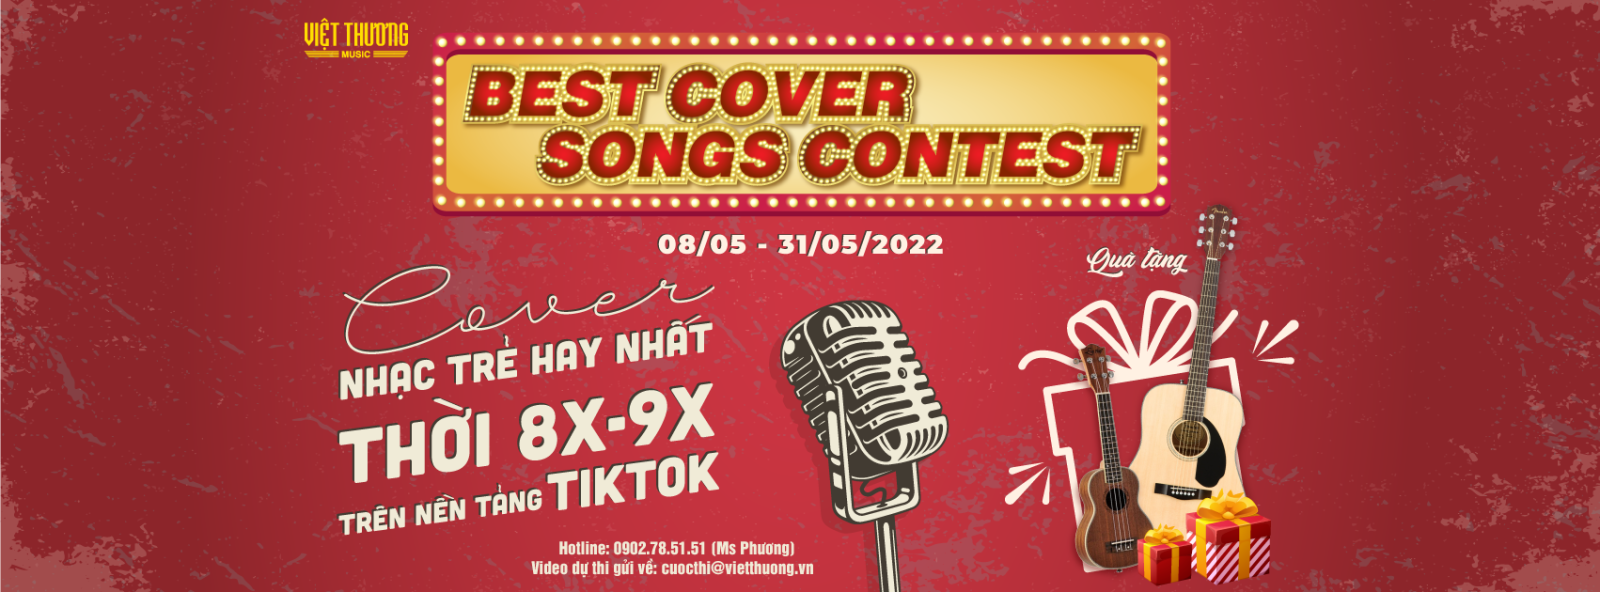 Thông báo thể lệ cuộc thi: “BEST COVER SONGS CONTEST” - Cover nhạc trẻ hay nhất thời 8x-9x